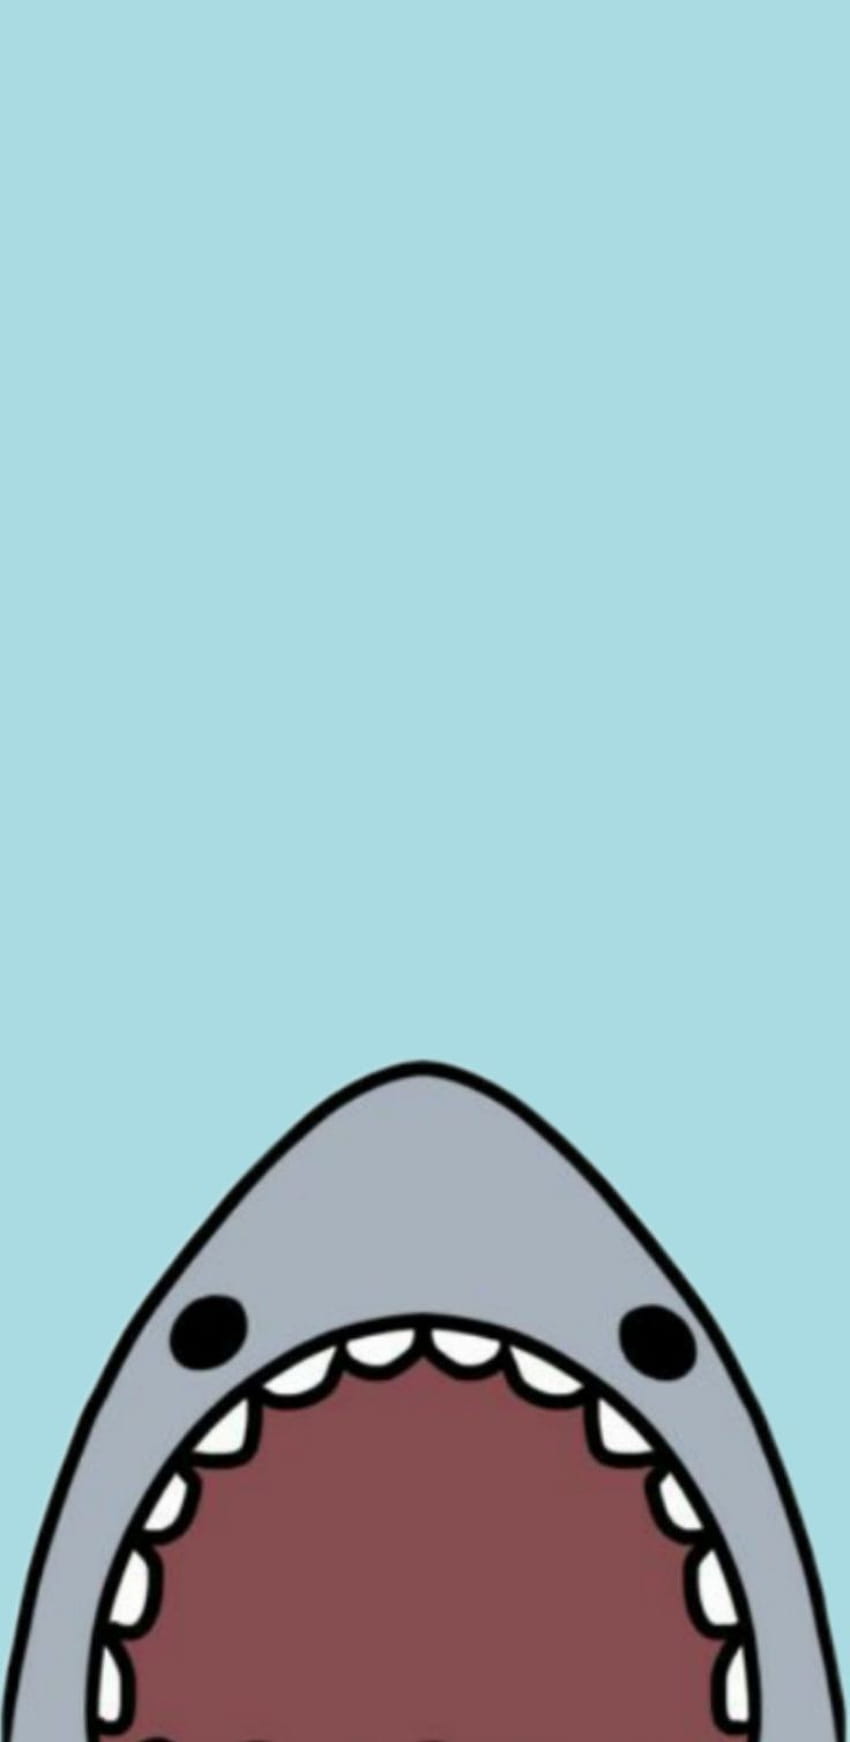 Bạn muốn một hình nền điện thoại độc đáo và hài hước? Hãy xem hình ảnh này về một chú cá mập. Bạn sẽ không thể nhịn cười khi nhìn thấy nó.